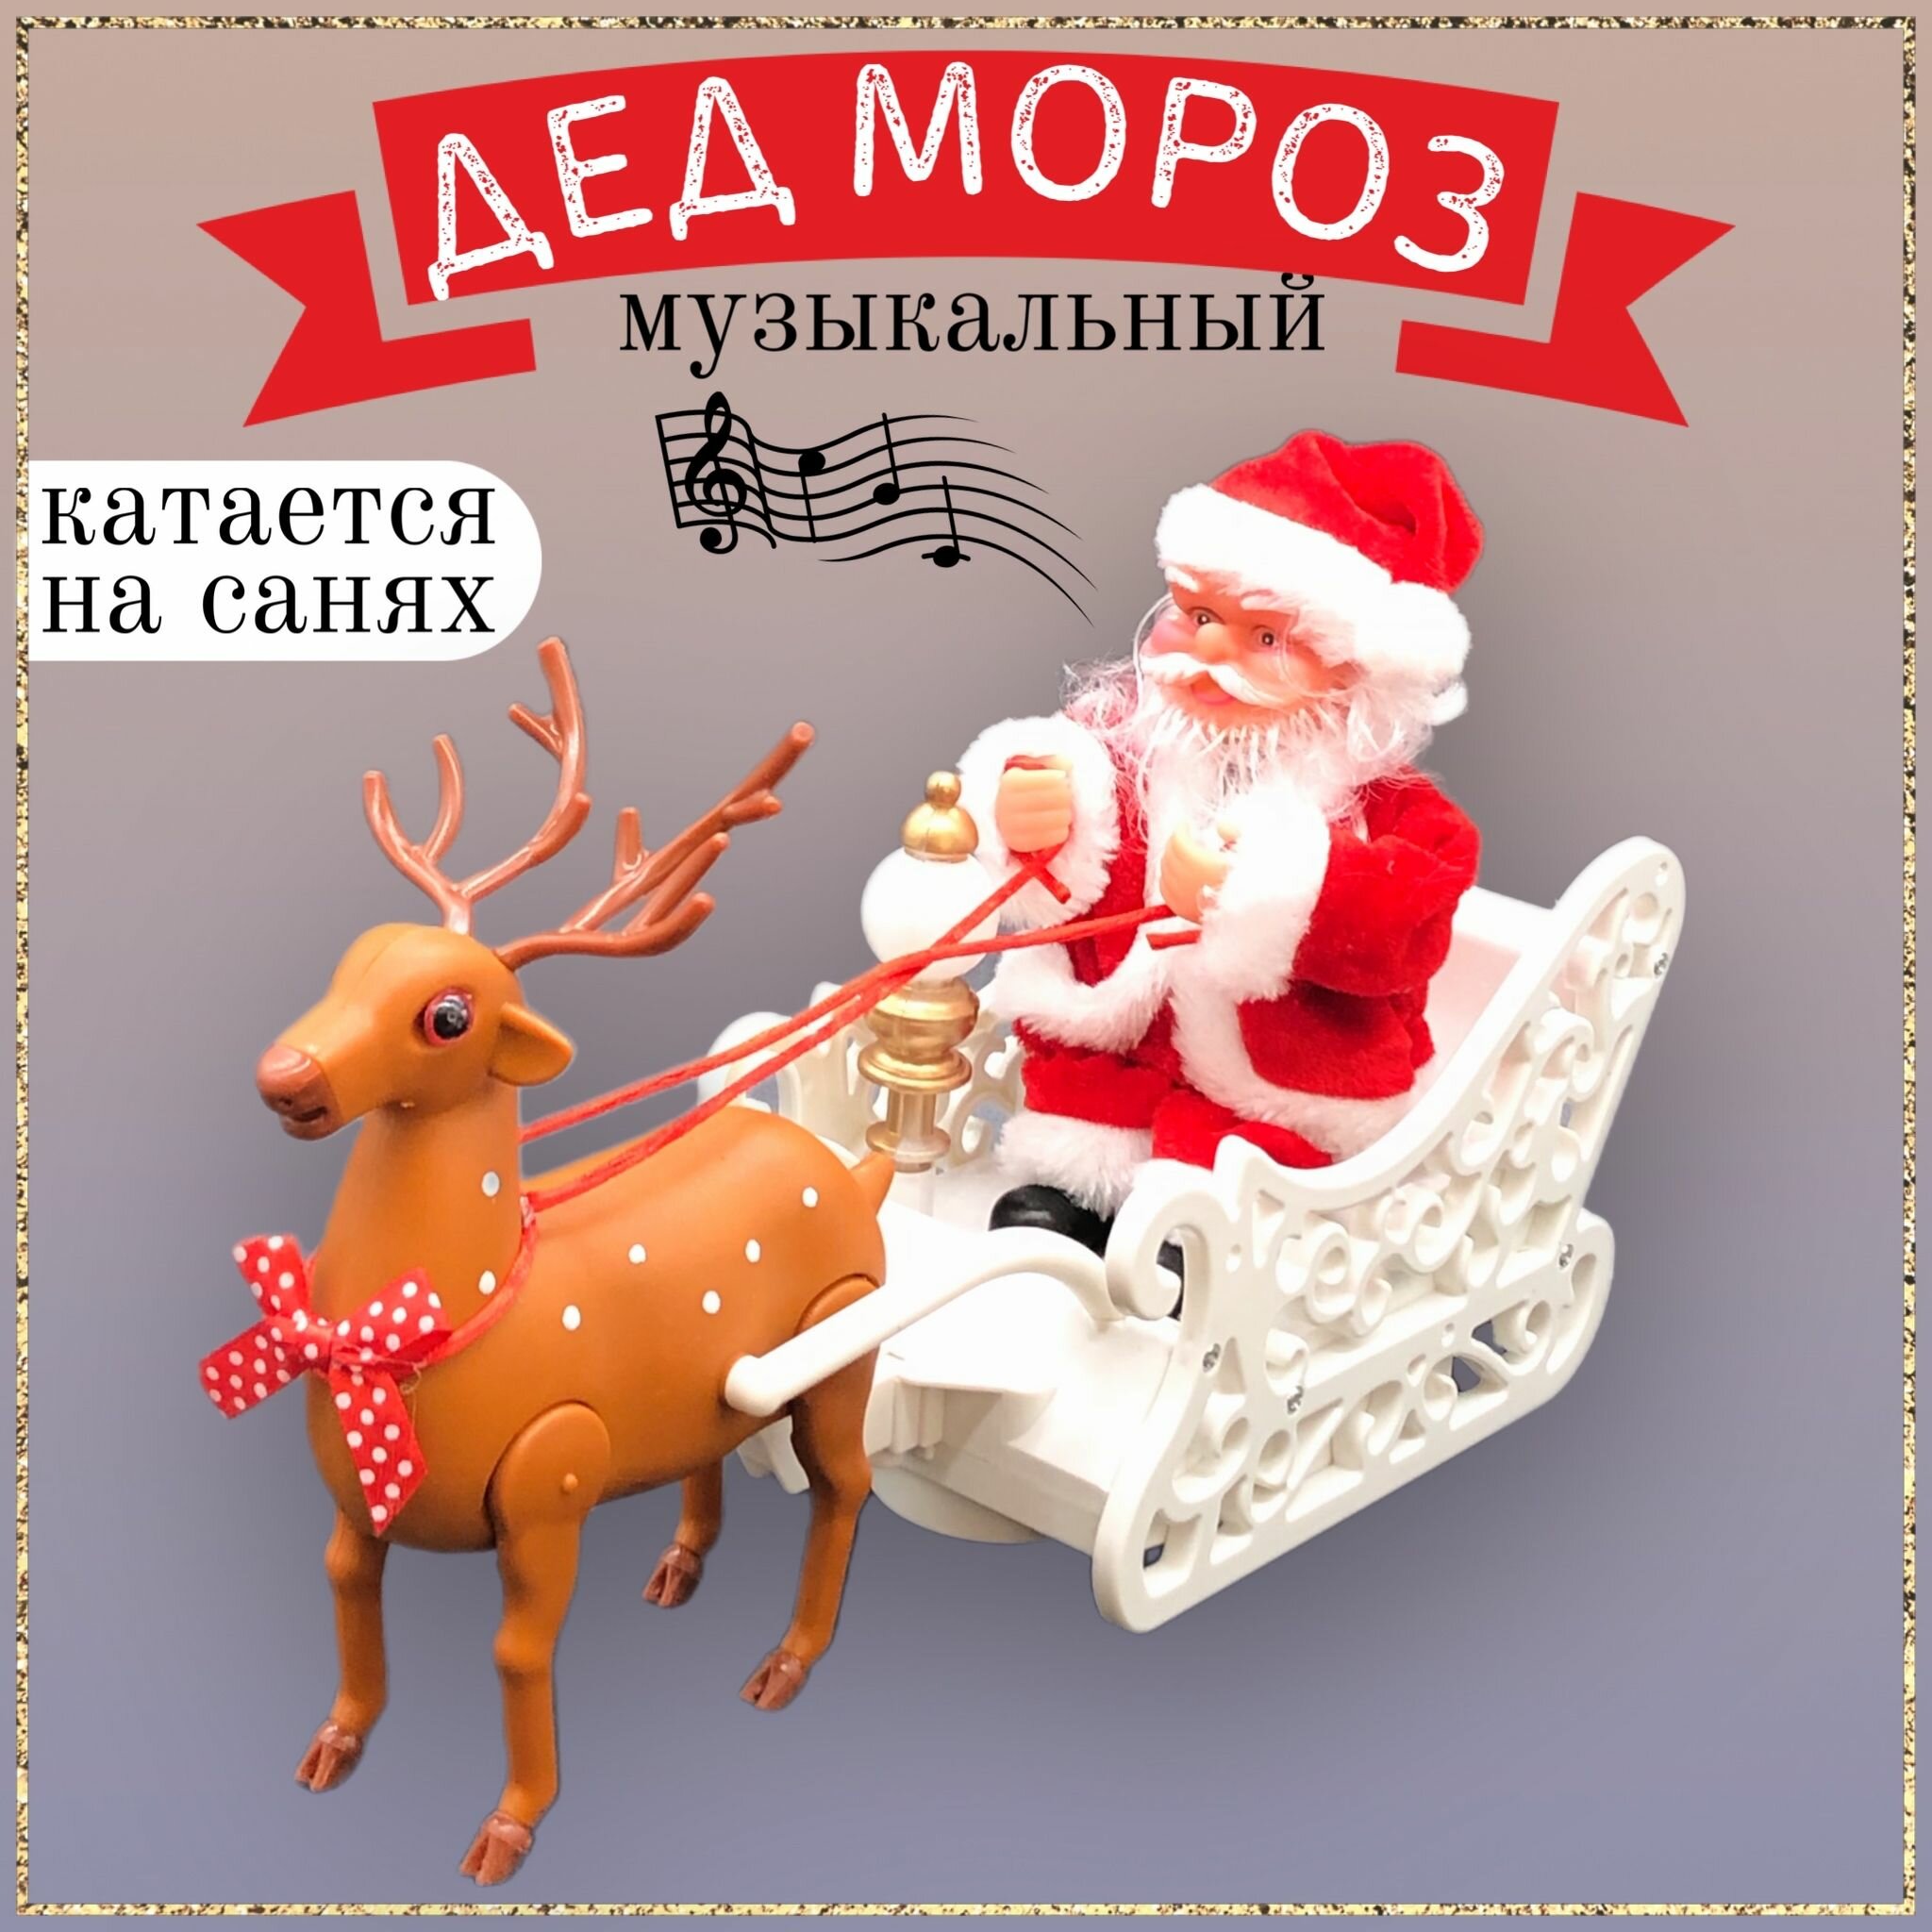 Игрушка Дед Мороз с оленем, музыкальный Дед Мороз